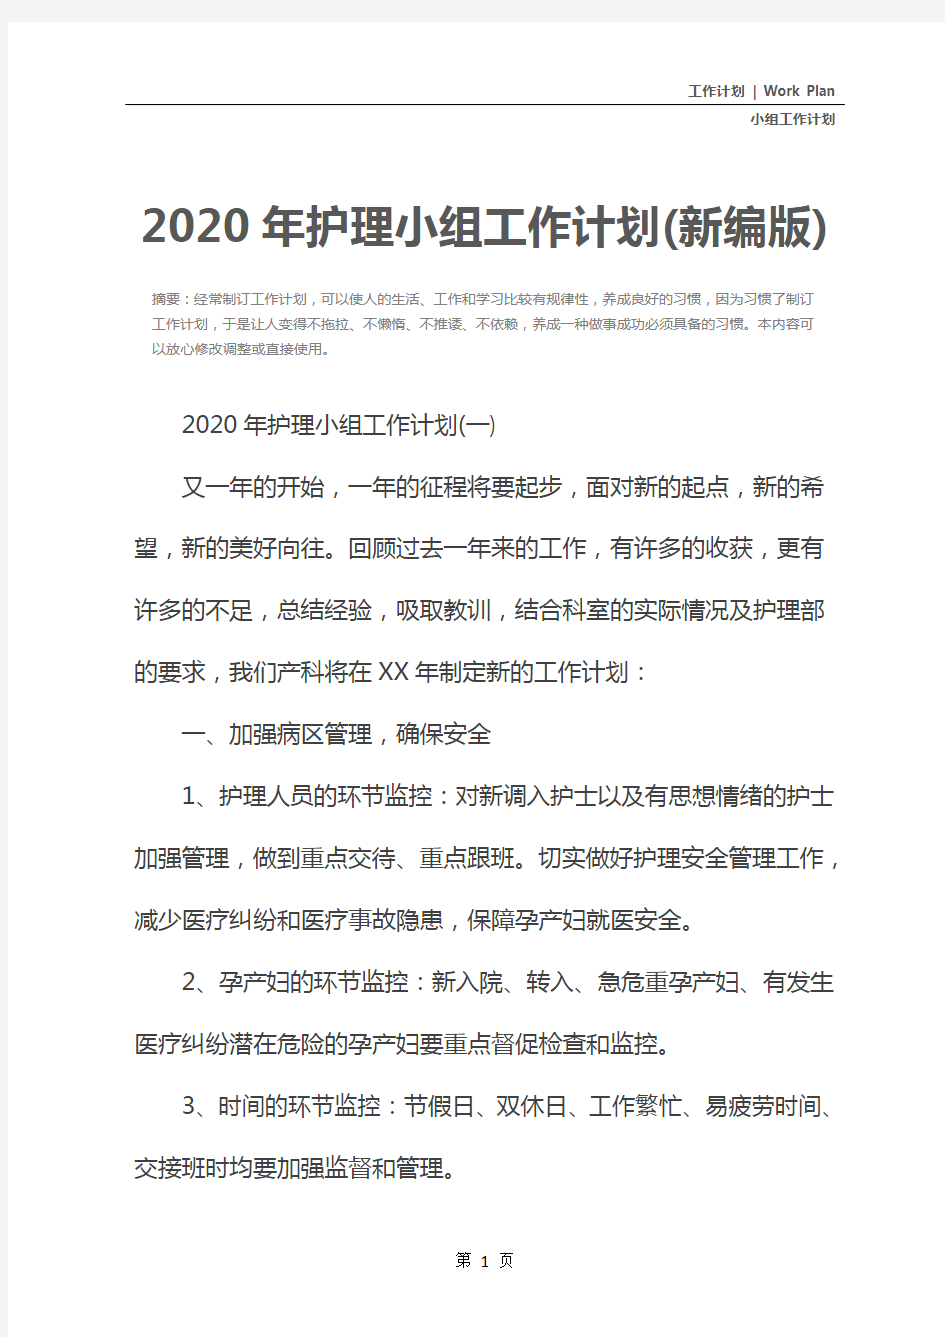 2020年护理小组工作计划(新编版)